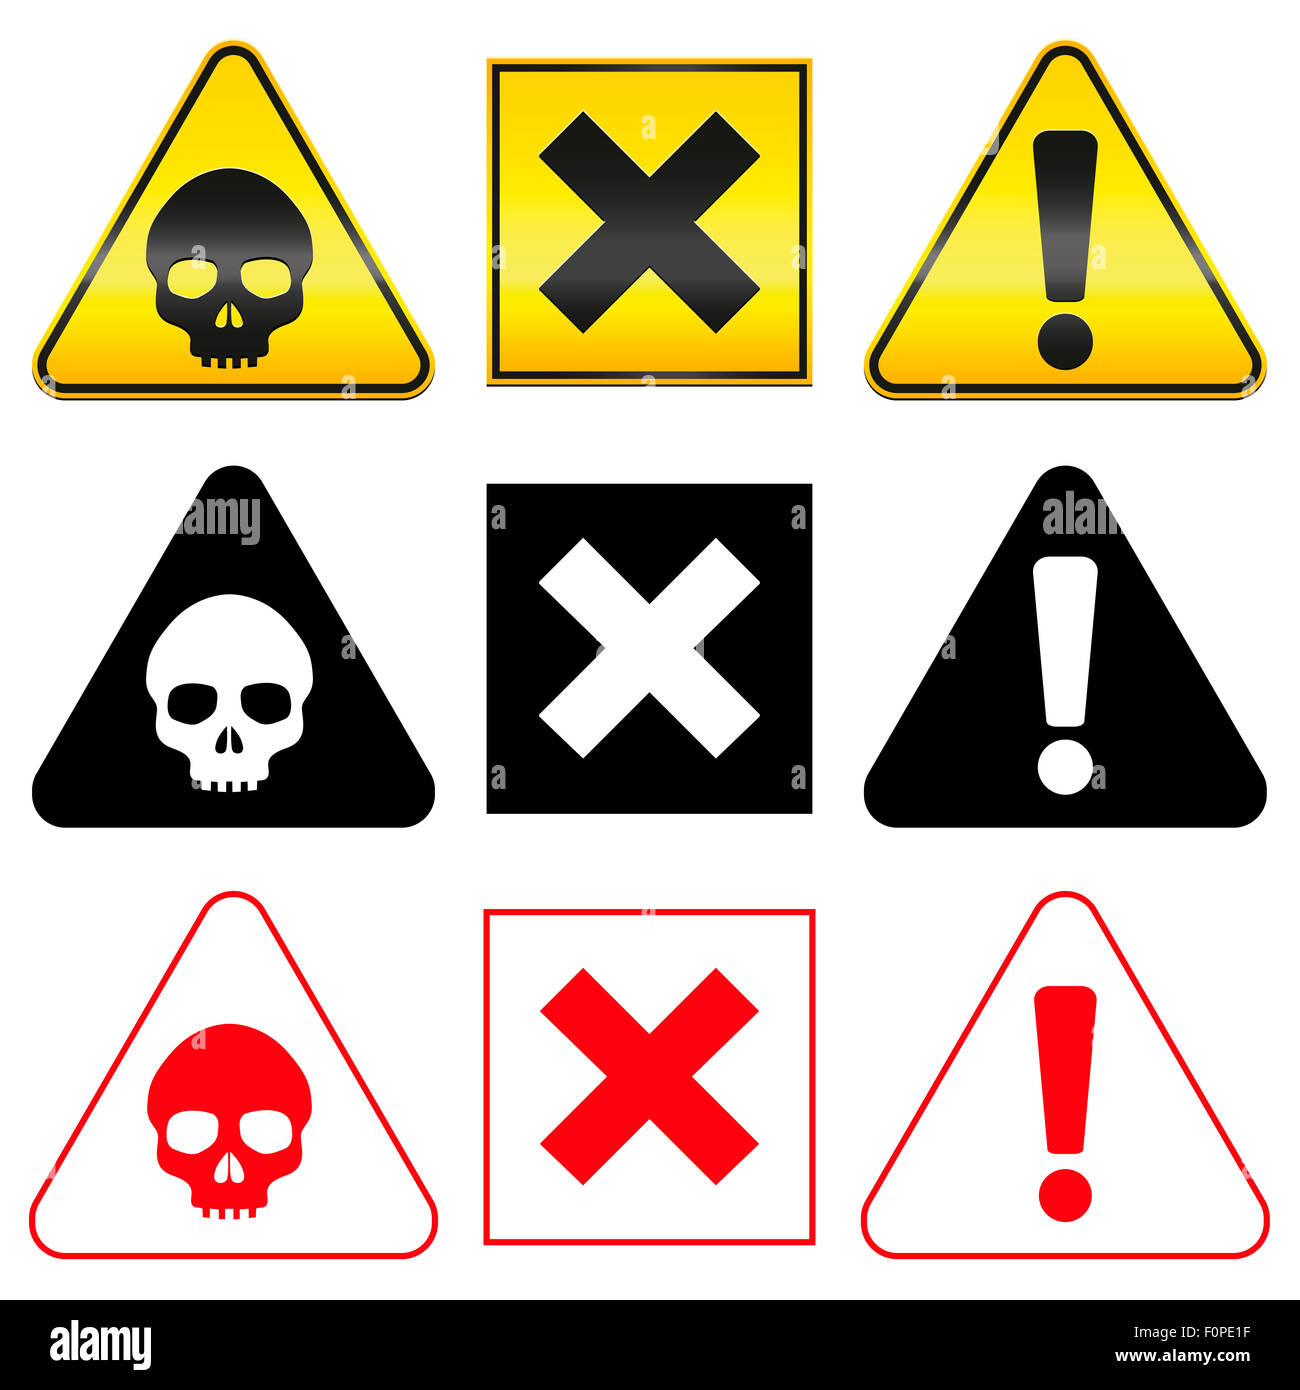 Warnung-Gefahrensymbole - Totenkopf, Kreuz und Ausrufezeichen im gelben, roten und schwarzen Version. Stockfoto